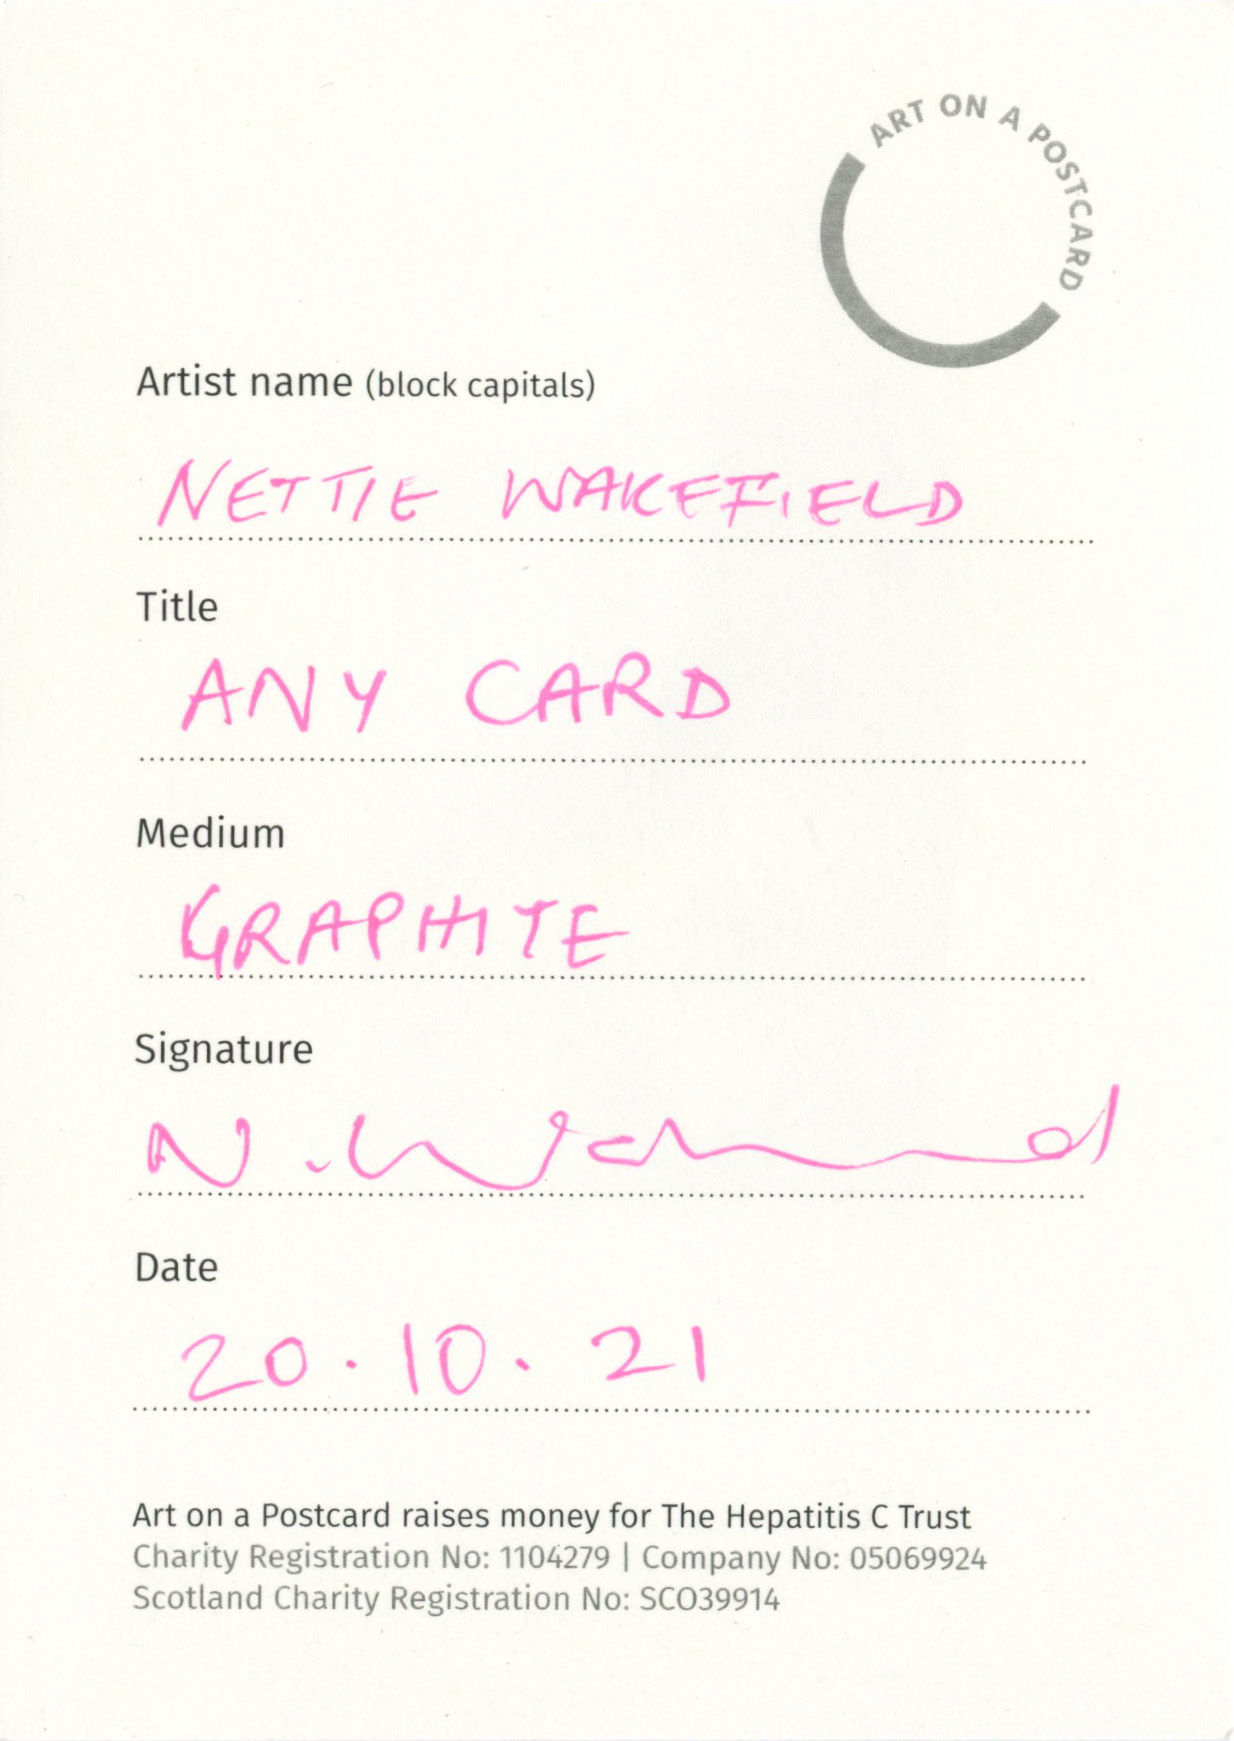 21. Nettie Wakefield - Any Card - BACK